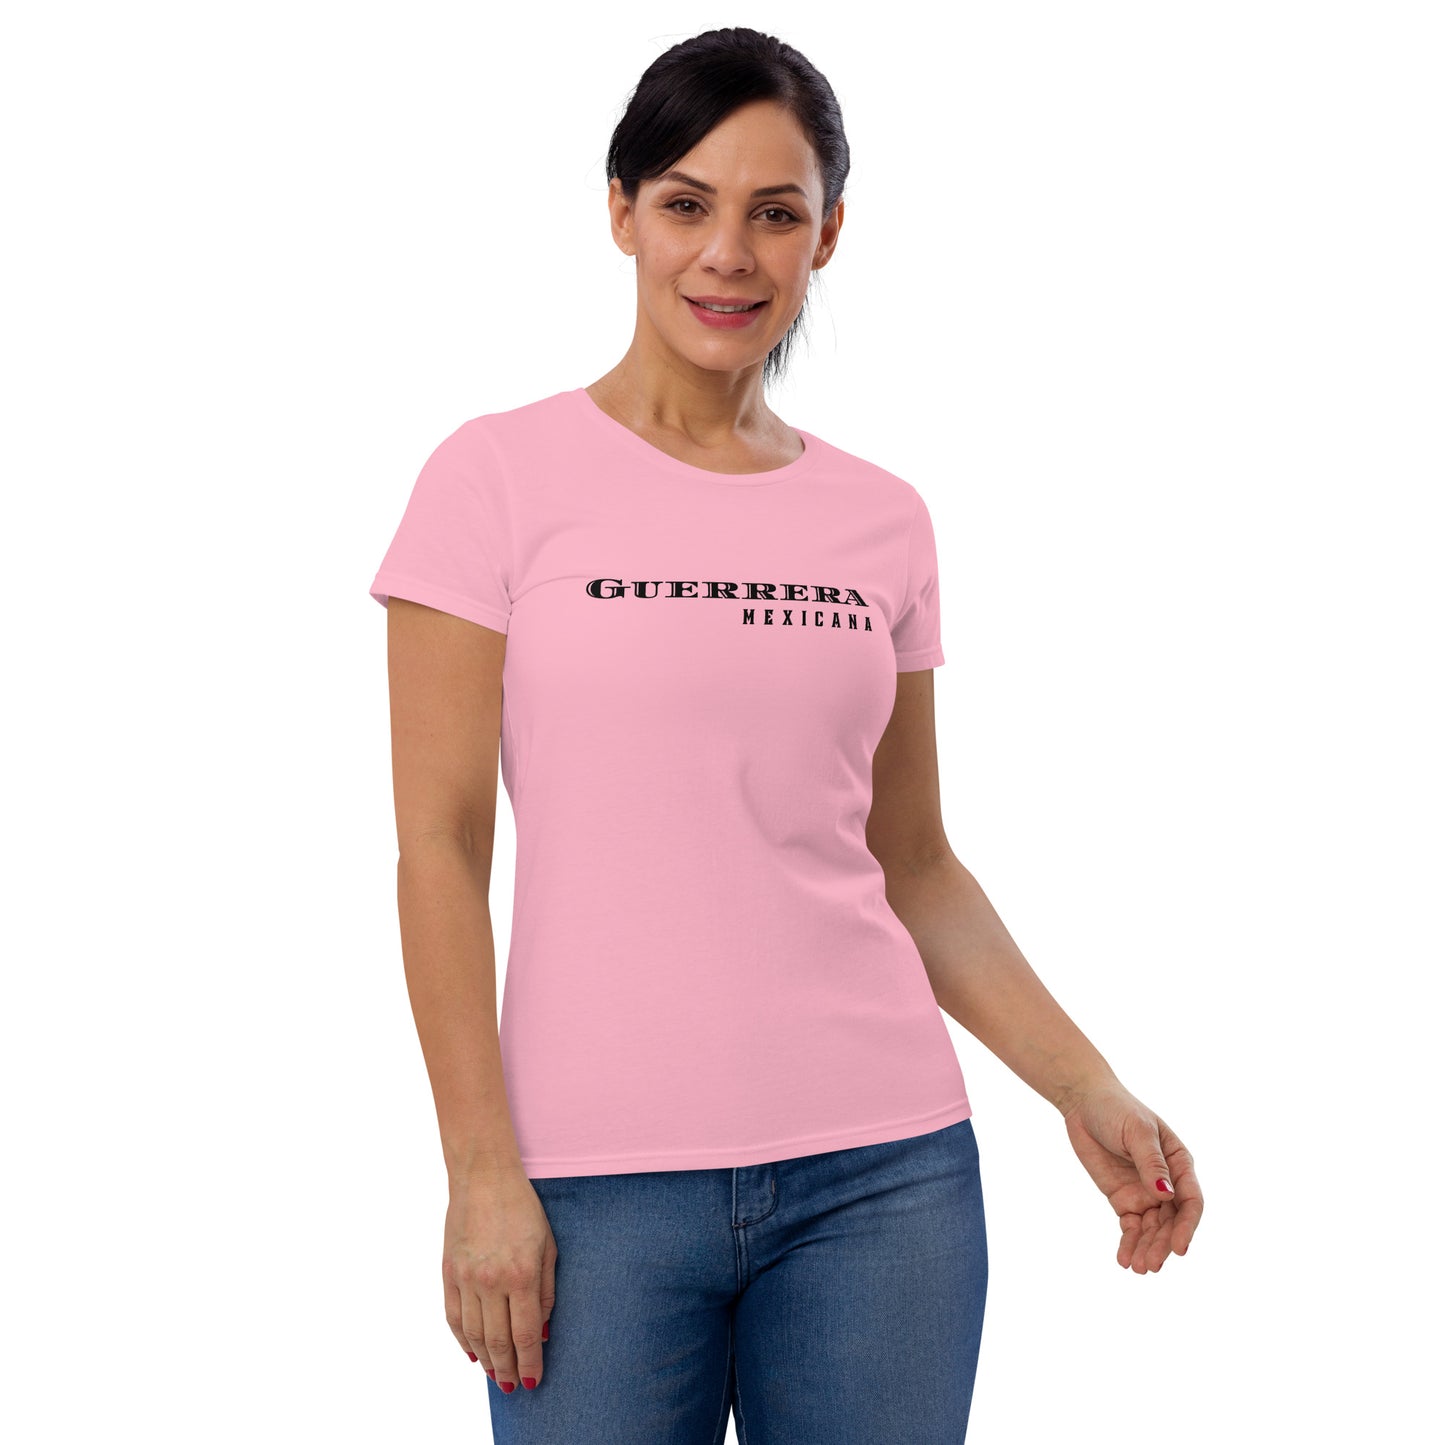 "Guerrera Mexicana" Women's short sleeve t-shirt